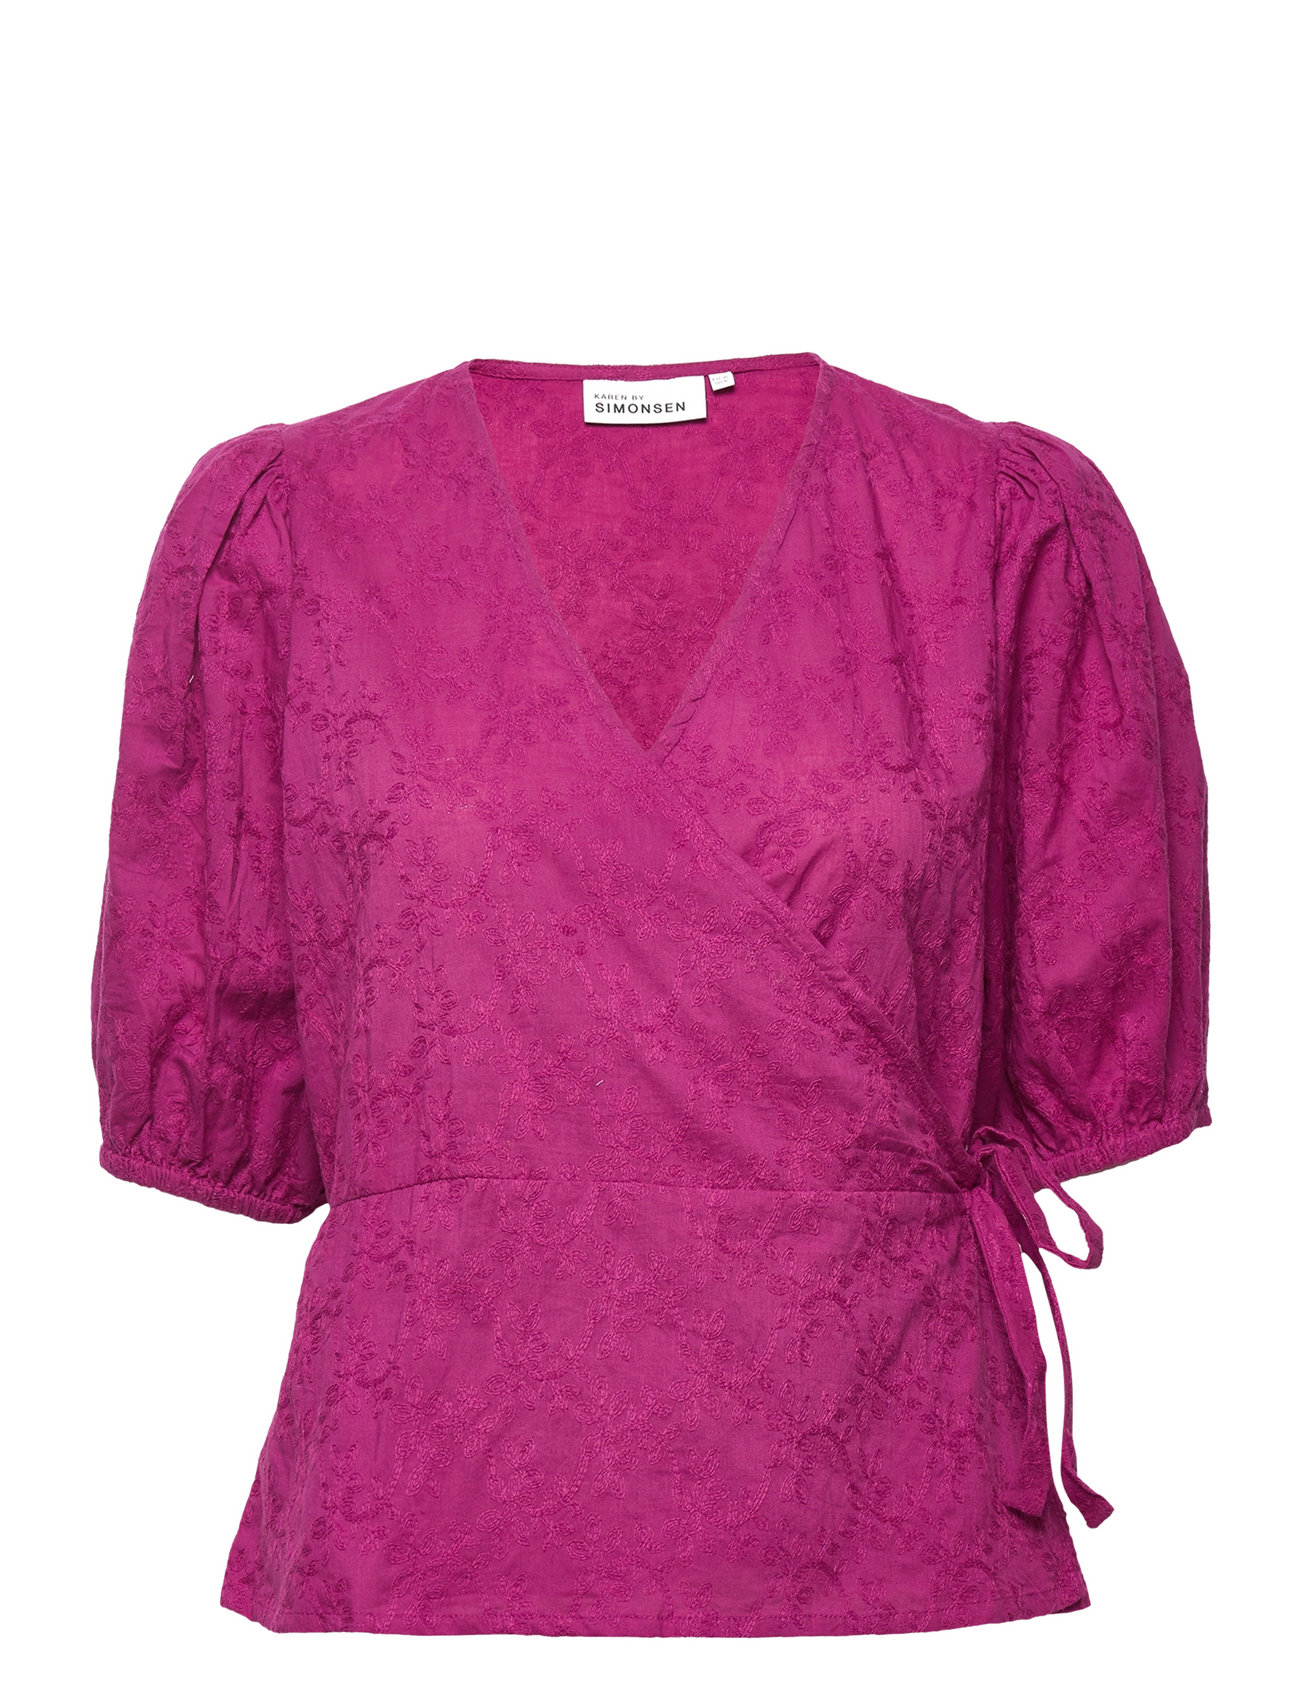 Emiliakb Wrap Top Tops Blouses Short-sleeved Pink Karen By Simonsen